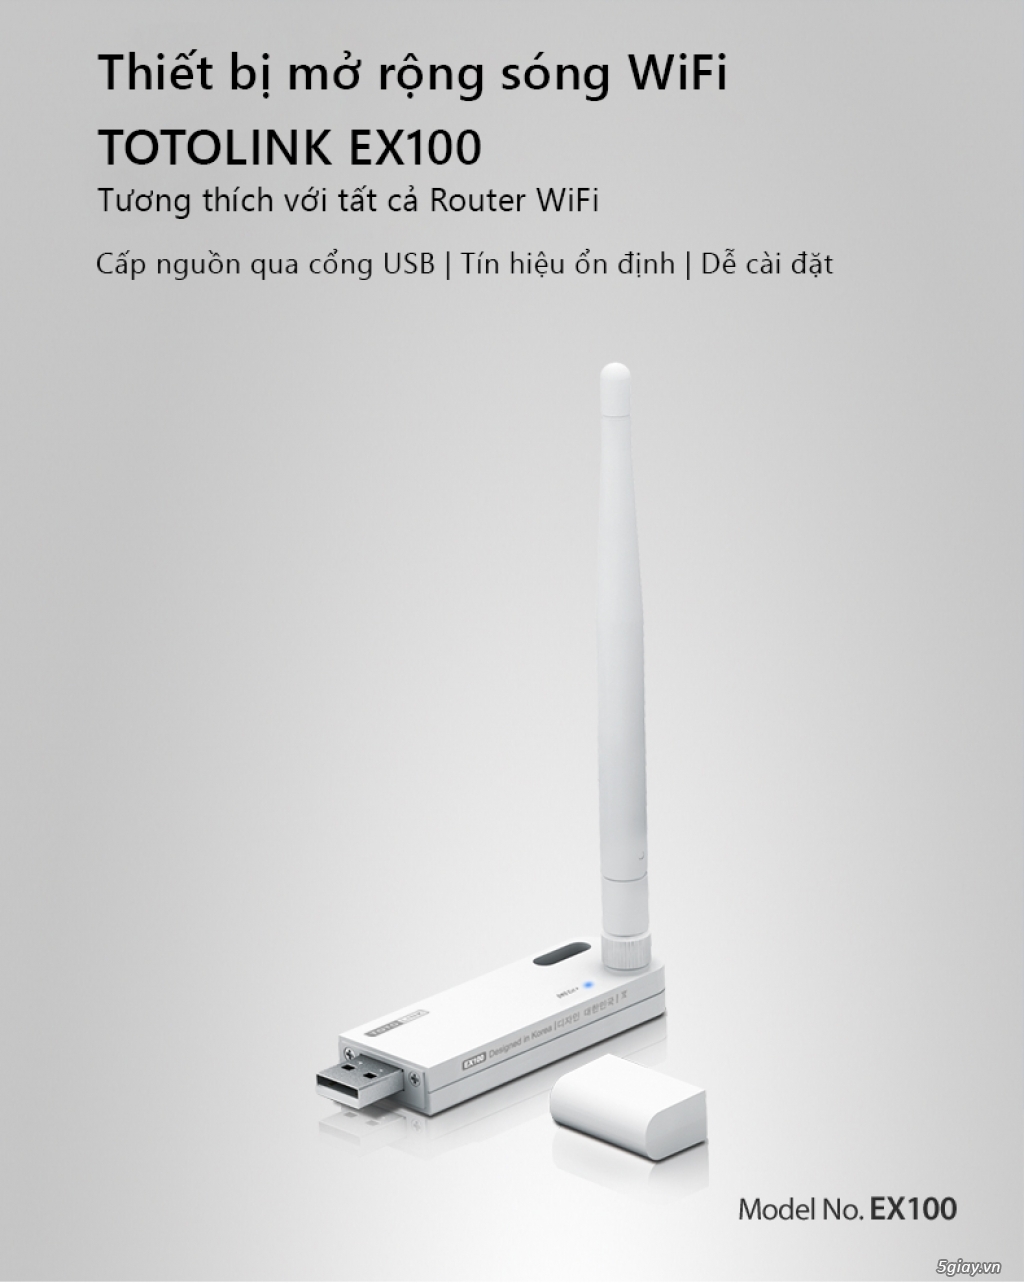 So Easy Shop - Chuyên thiết bị mạng Totolink - Bao Giá tốt nhất - 5